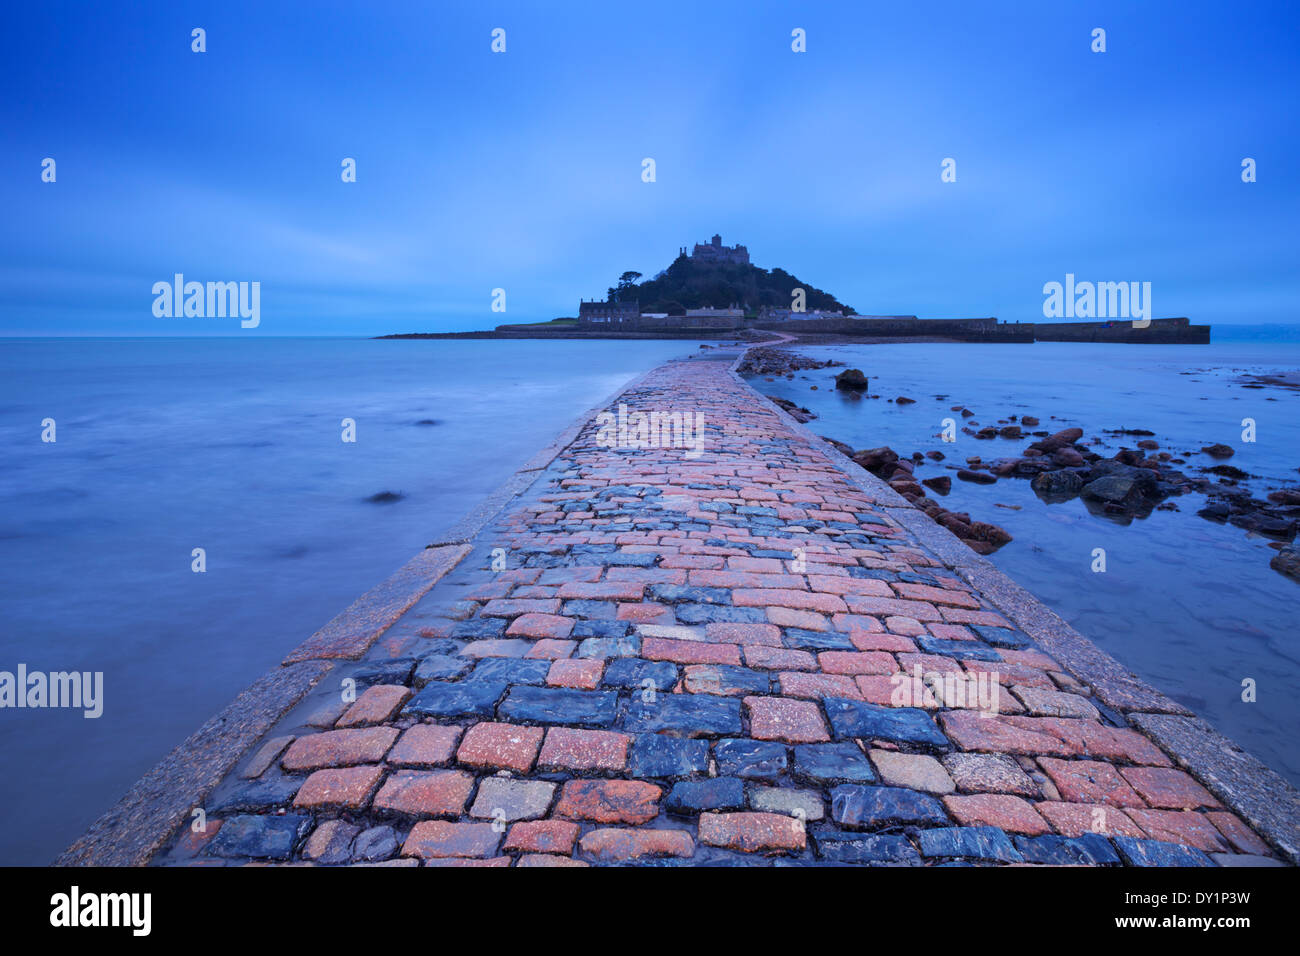 La chaussée menant à Saint Michaels Mount à Cornwall, Angleterre à marée basse, photographié dans l'heure bleue à l'aube Banque D'Images